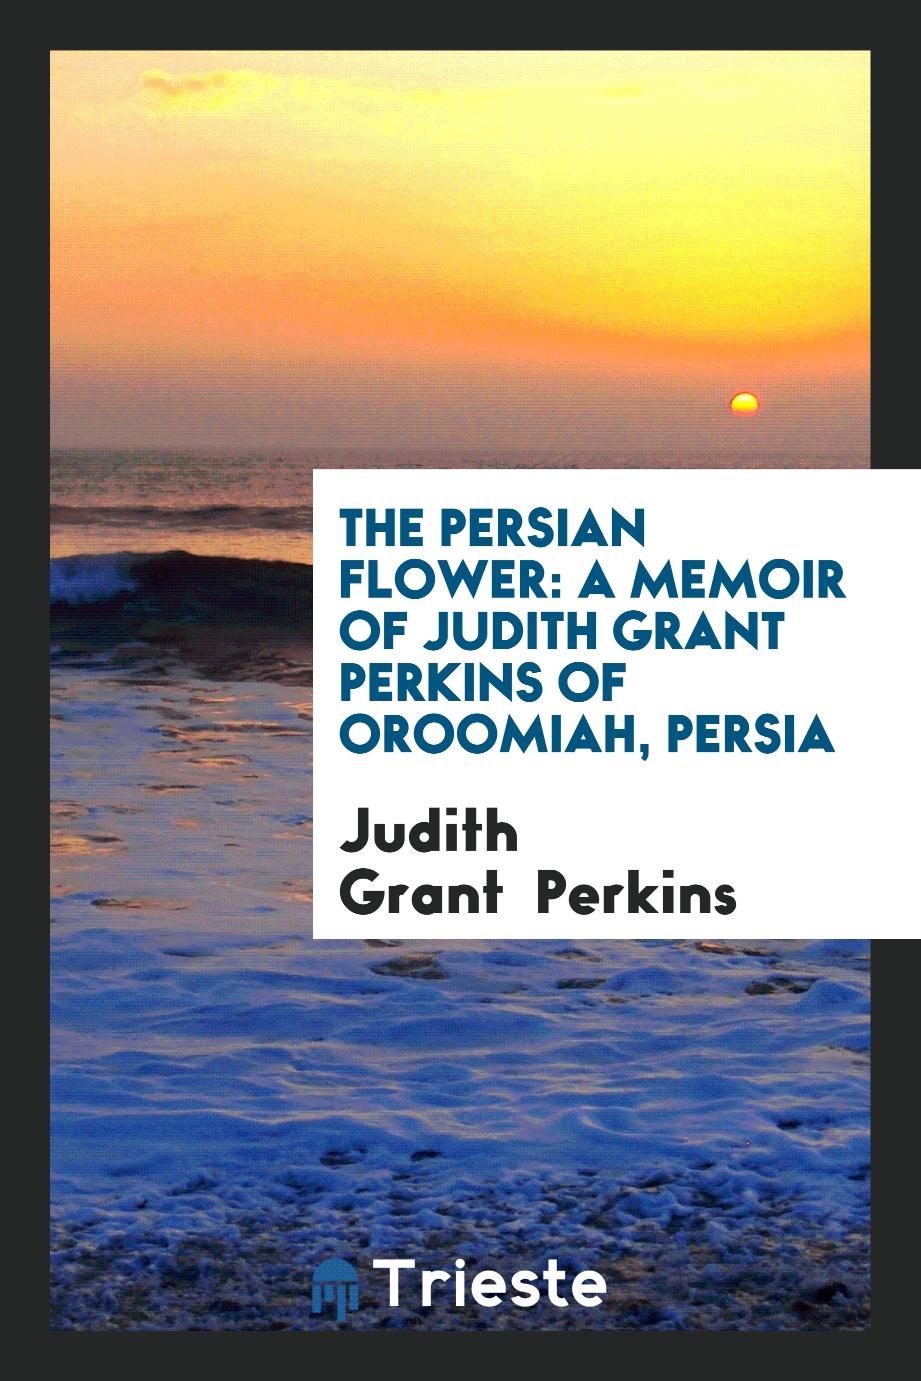 The Persian flower: a memoir of Judith Grant Perkins of Oroomiah, Persia